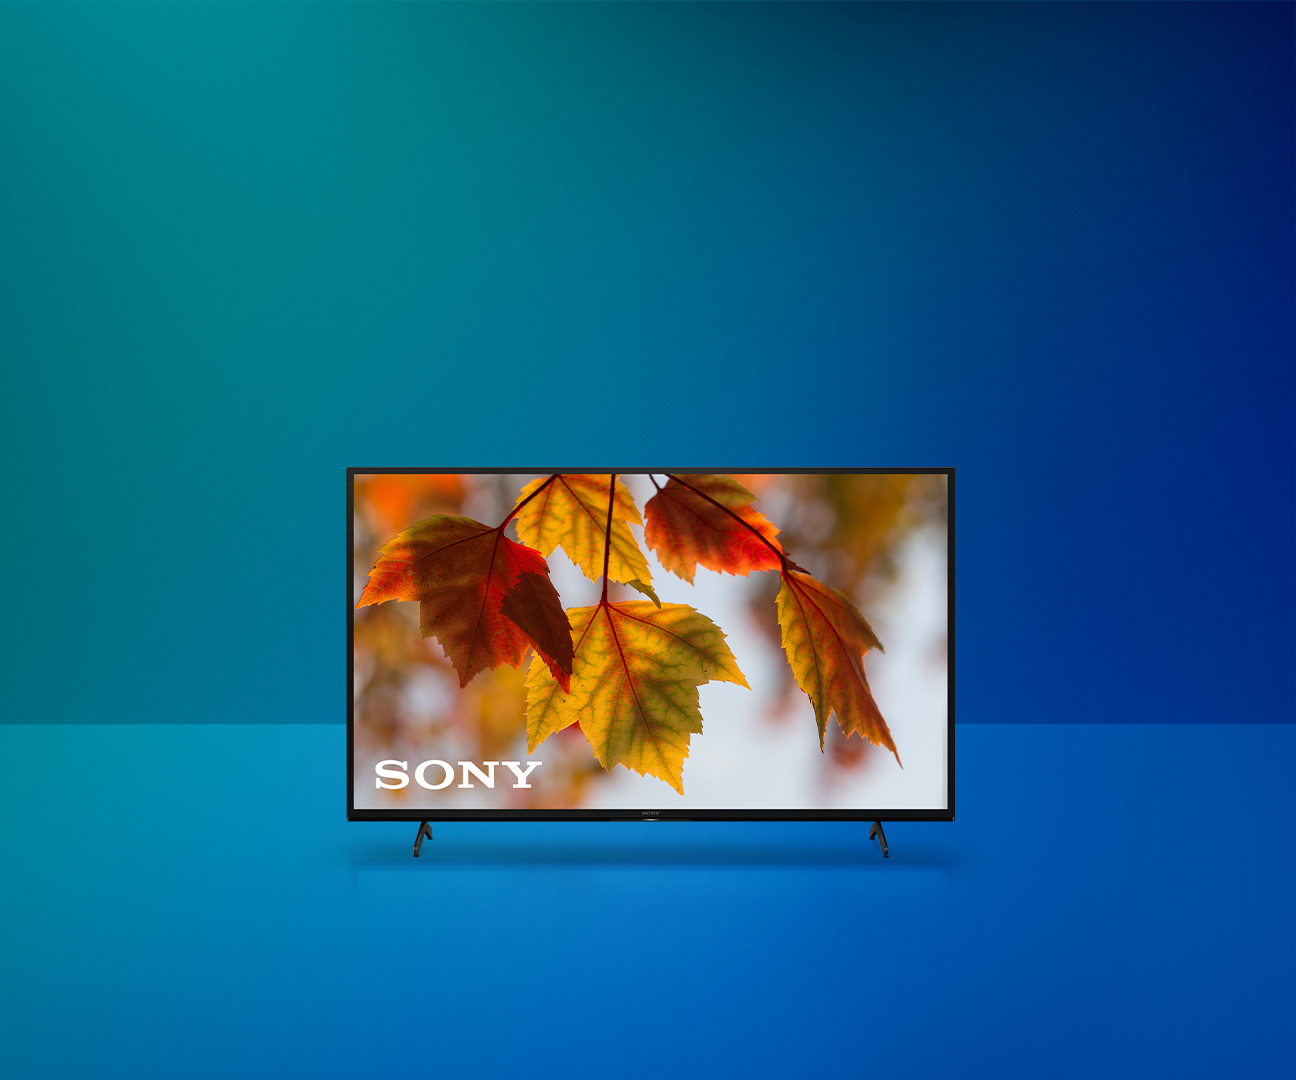 Herbst-Deal: Sony-TV für 99.- statt 899.- 